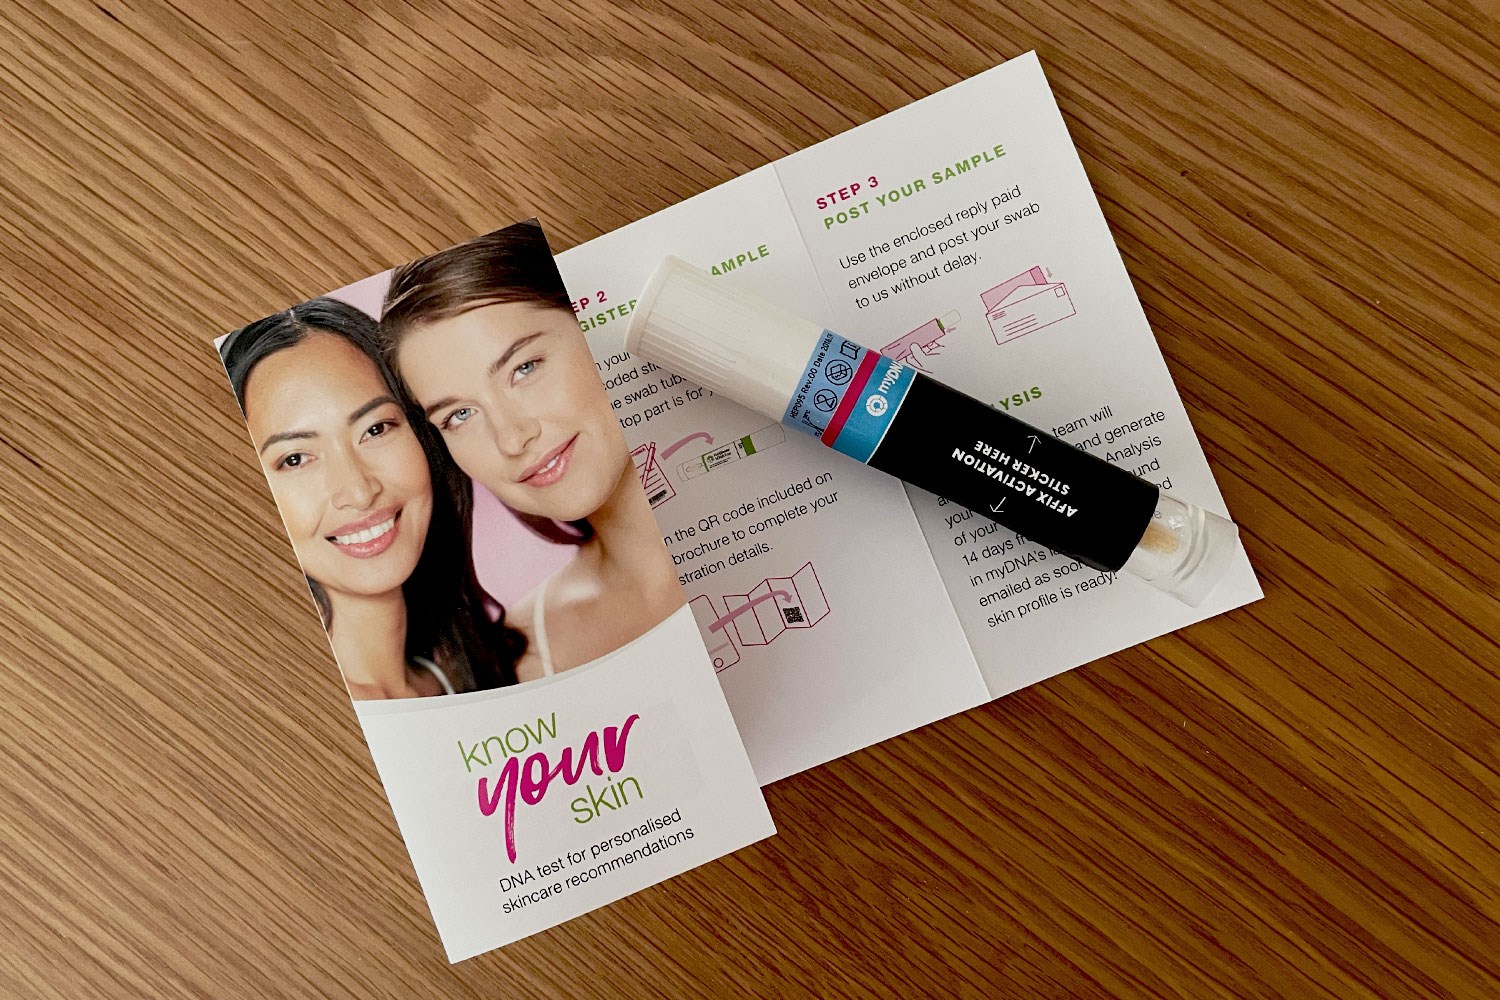 myDNA priceline know your skin DNA testing kit